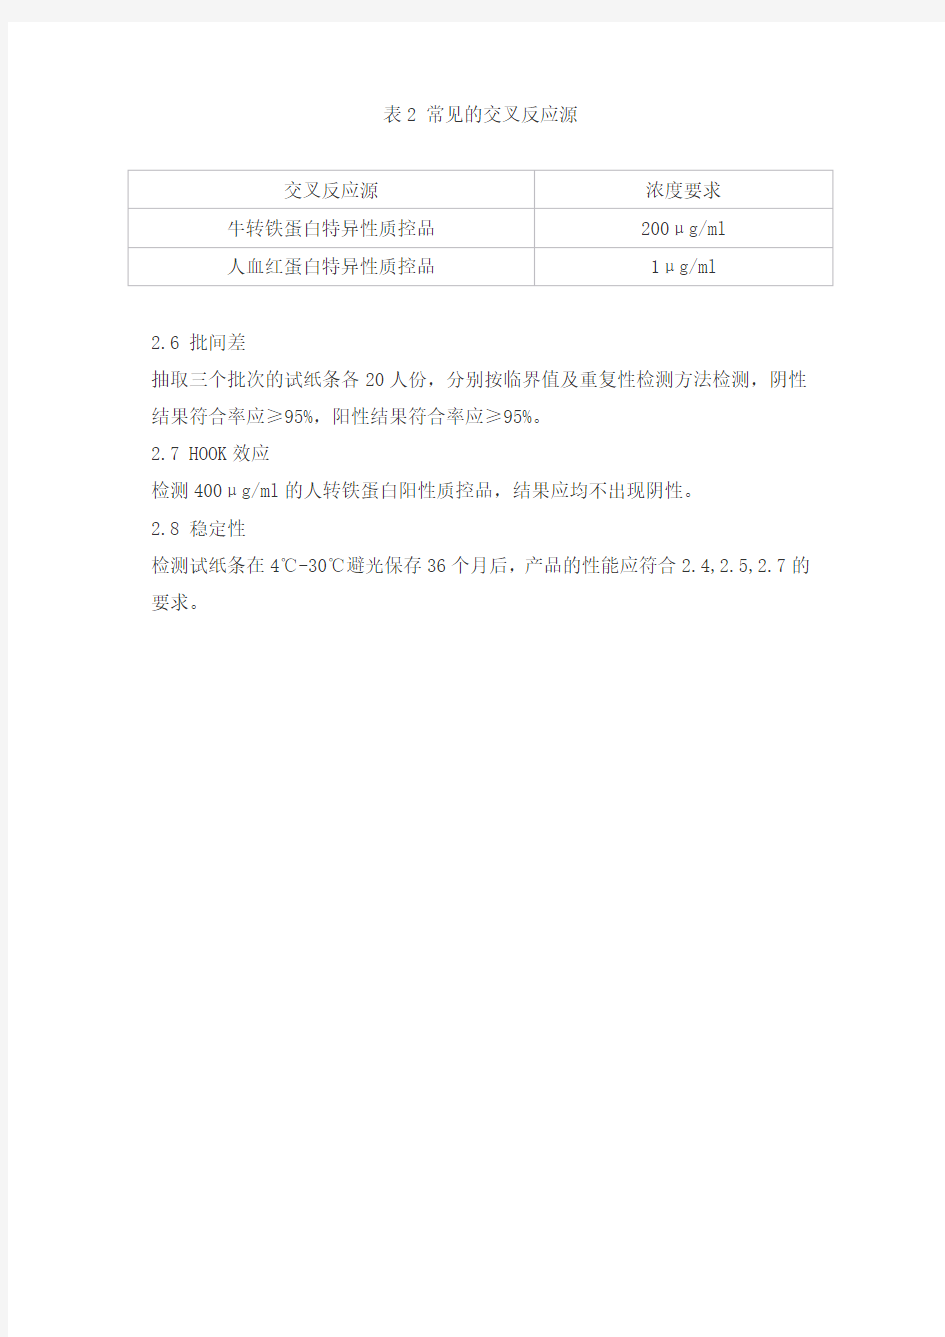 转铁蛋白检测试剂盒(胶体金免疫层析法)产品技术要求wanhua